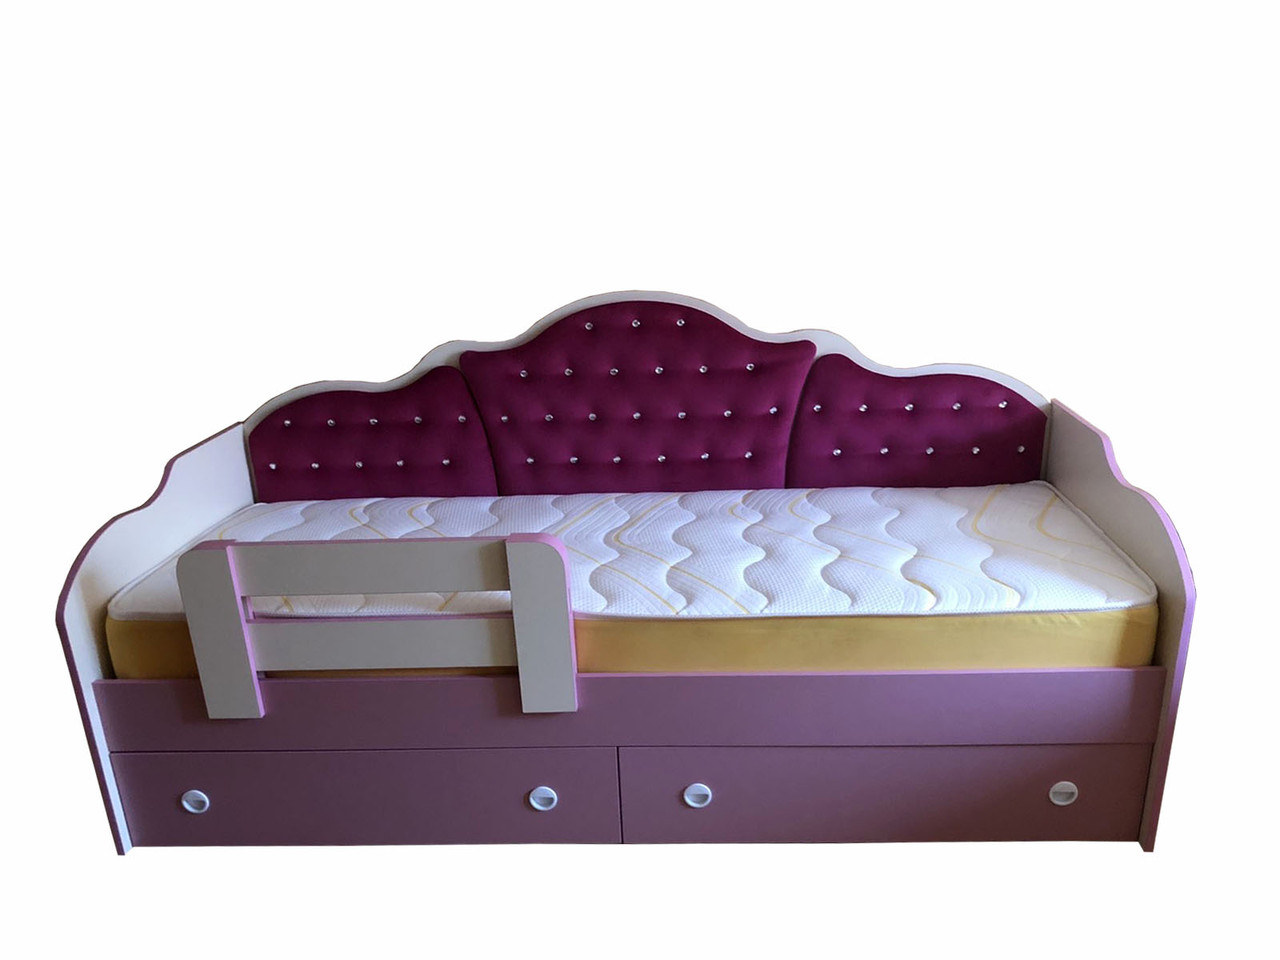 Ліжко дитяче "Принцеса" з ящиками для зберігання 2000*800 мм. Диван для дитини в дитячу кімнату